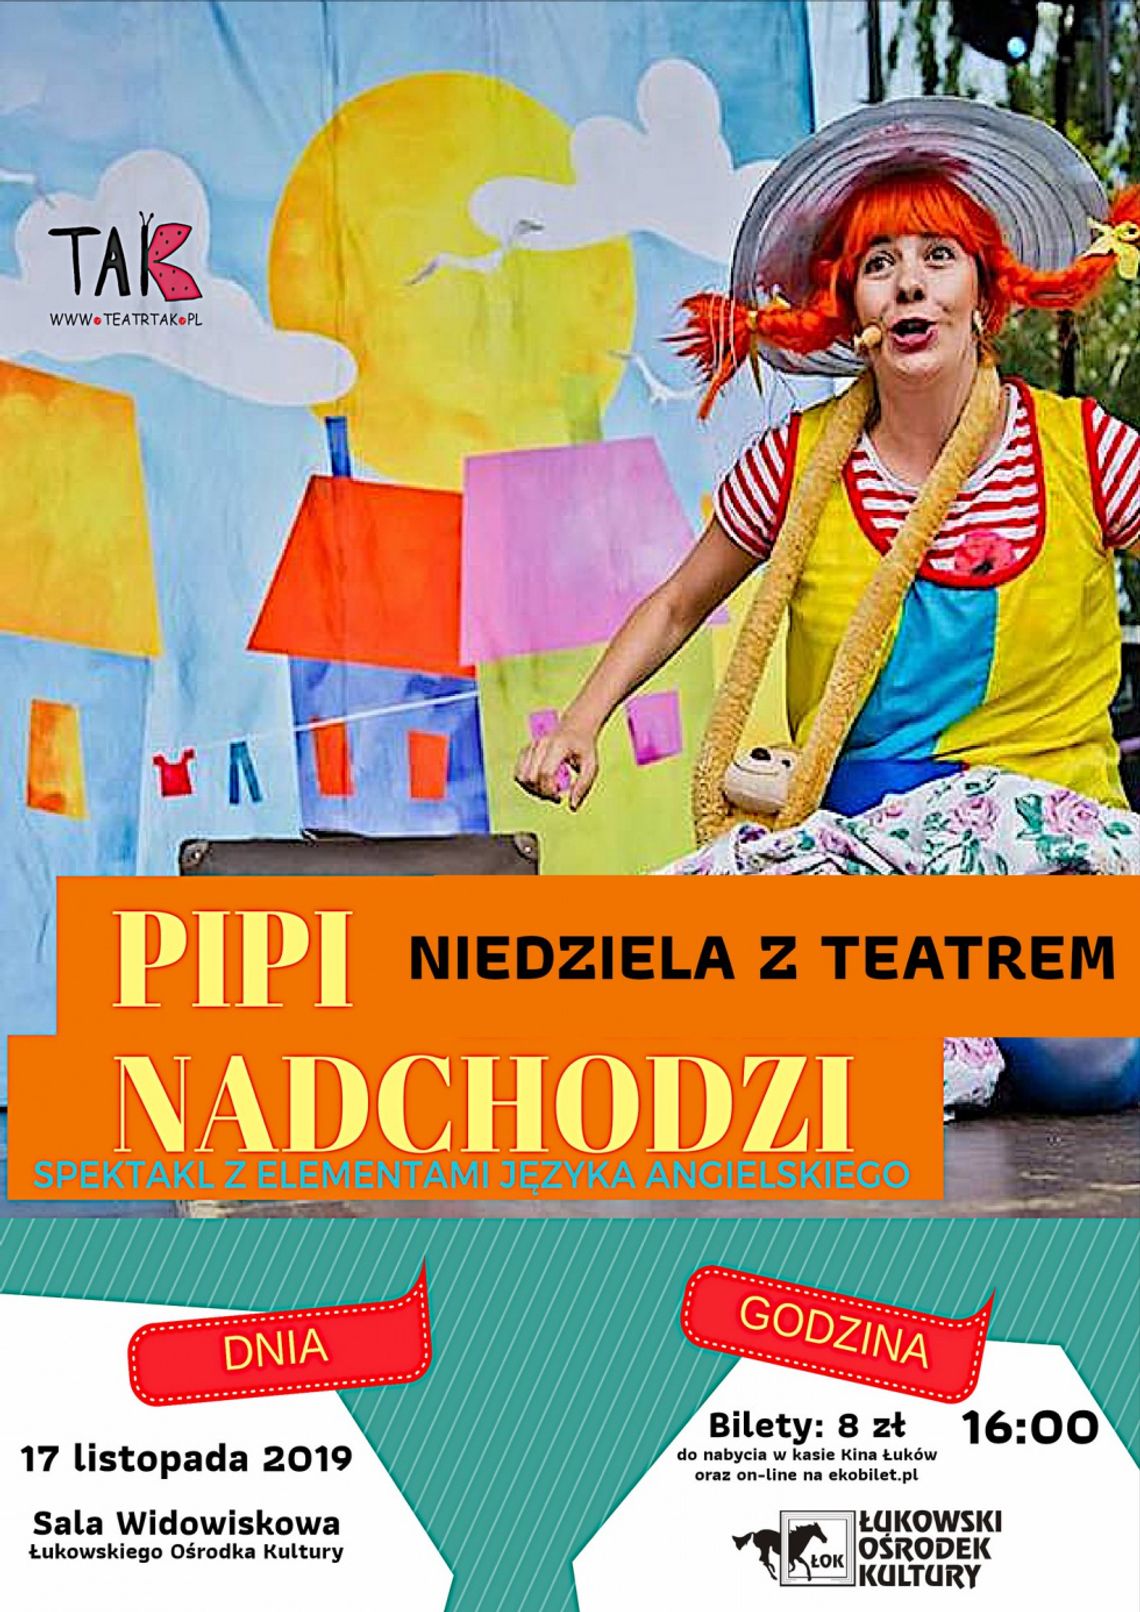 Niedziela z Teatrem "Pipi nadchodzi"- spektakl z elementami angielskiego